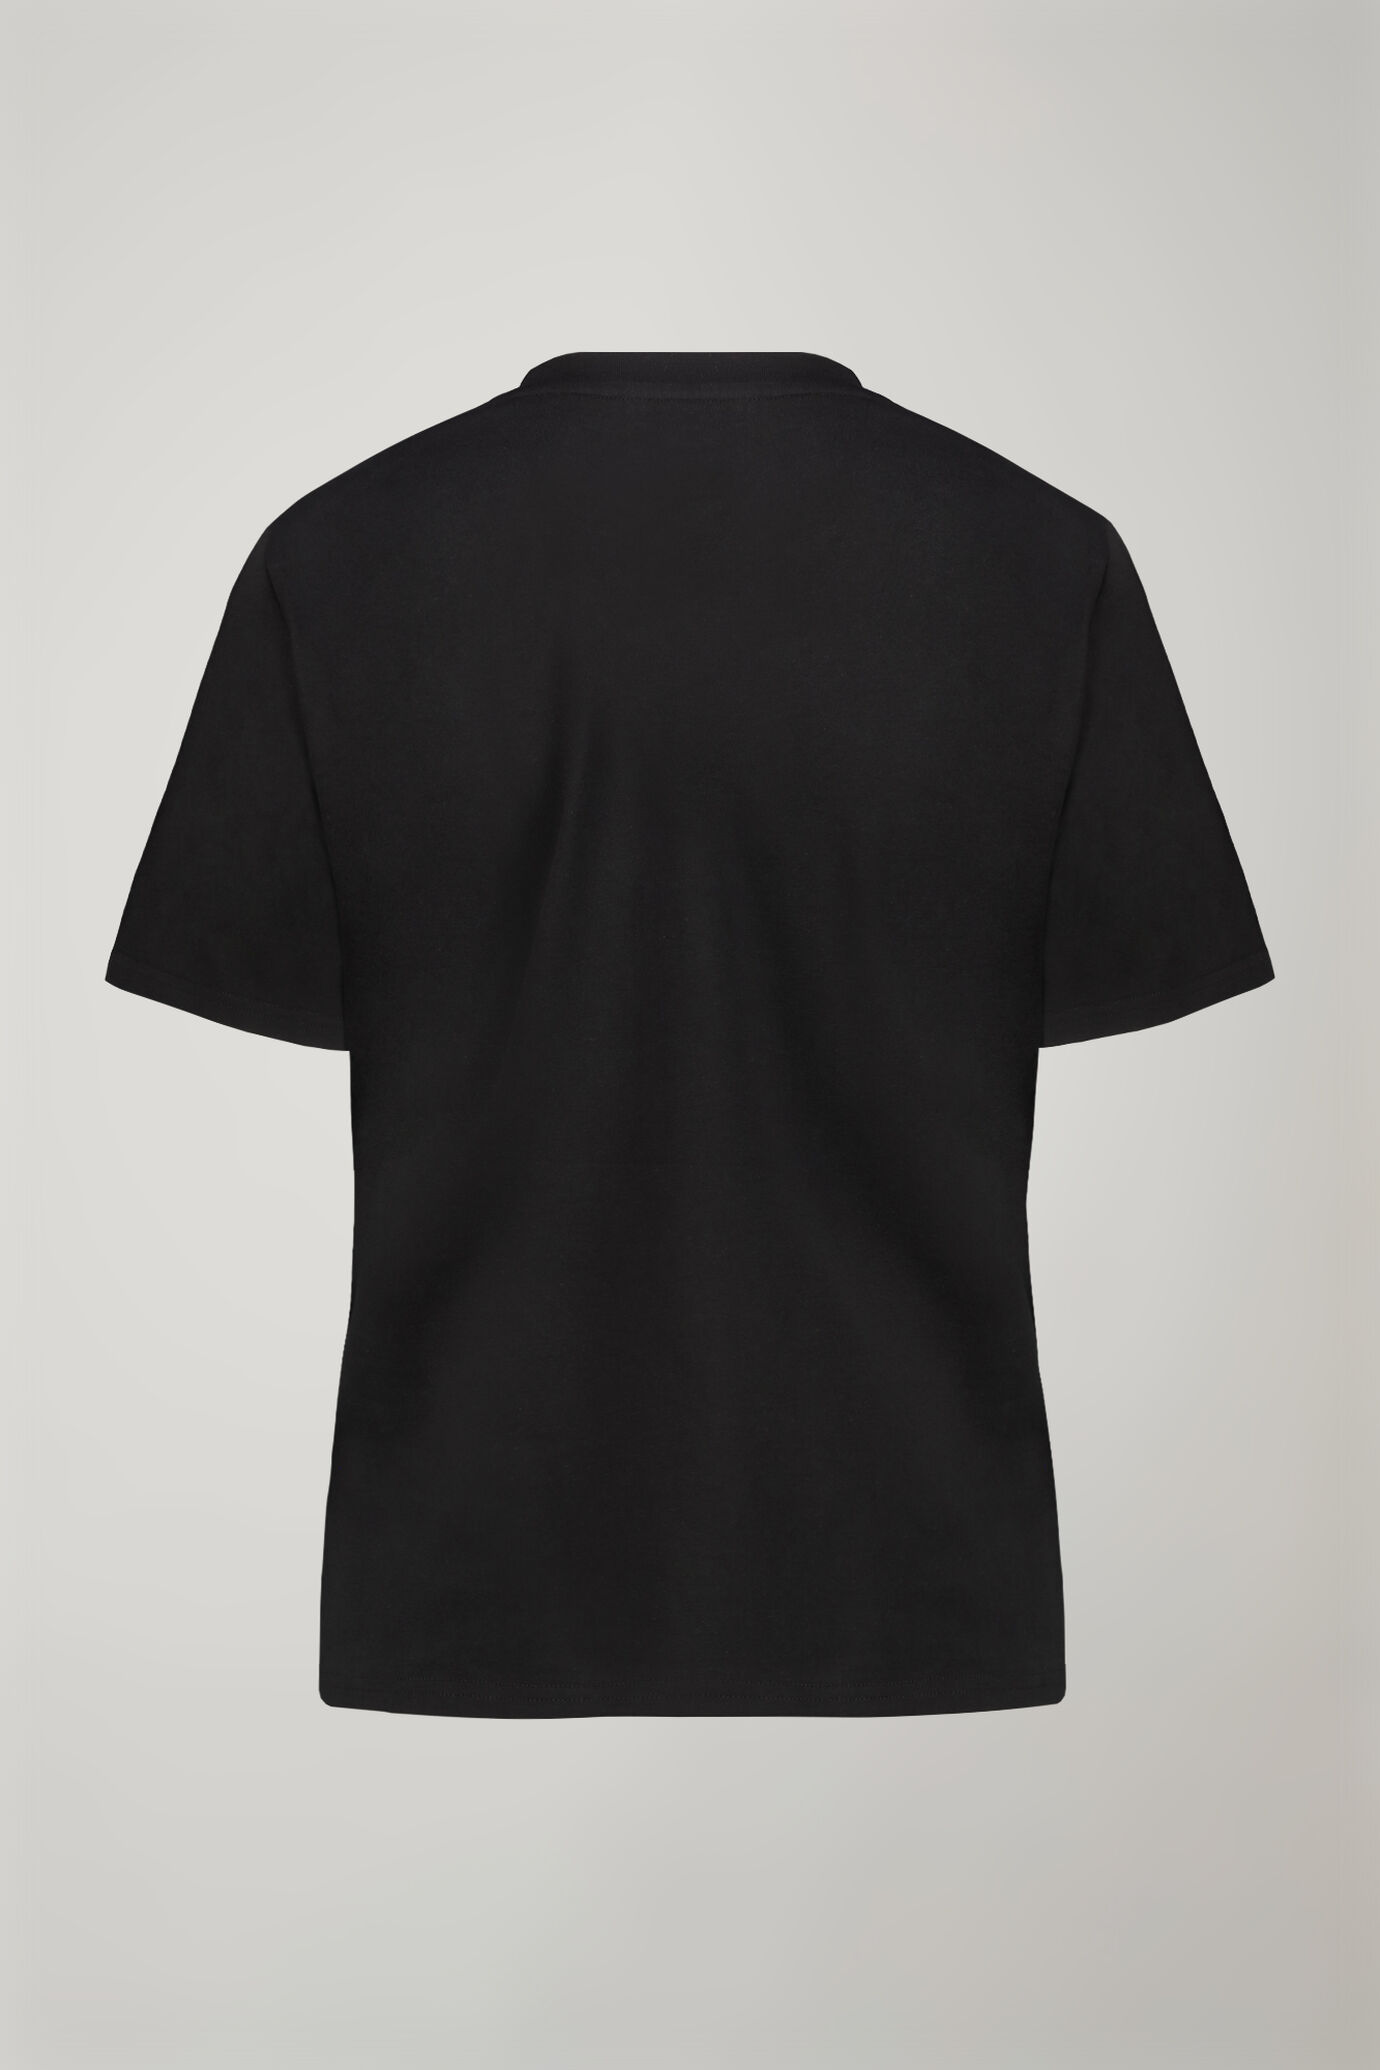 Damen-T-Shirt mit V-Ausschnitt aus 100 % Baumwolle in normaler Passform image number 5